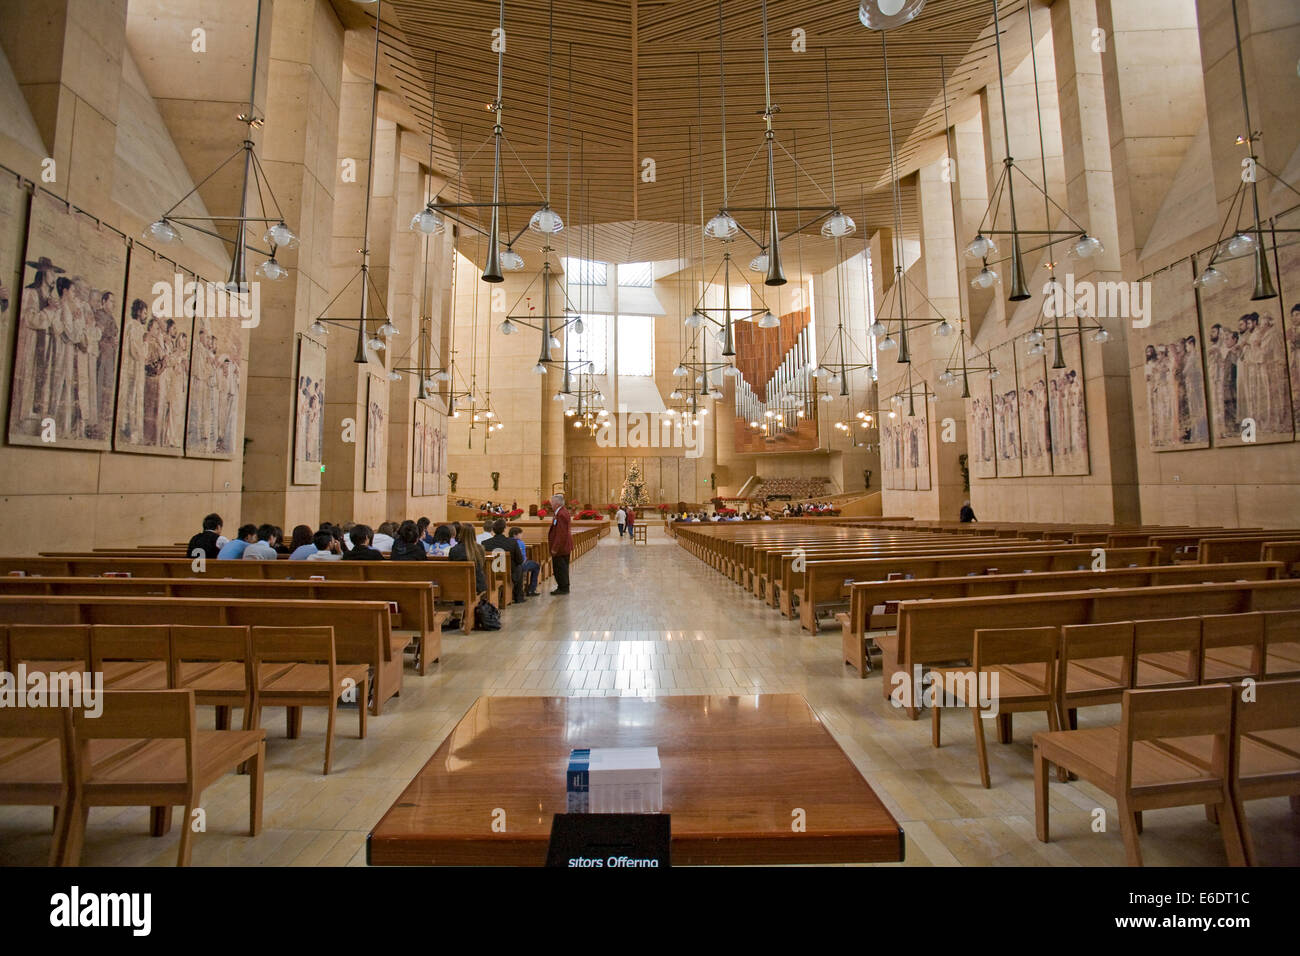 El interior de la Catedral de Nuestra Señora de Los Ángeles por el arquitecto Rafael Moneo, el centro de Los Angeles, California, Estados Unidos. Foto de stock